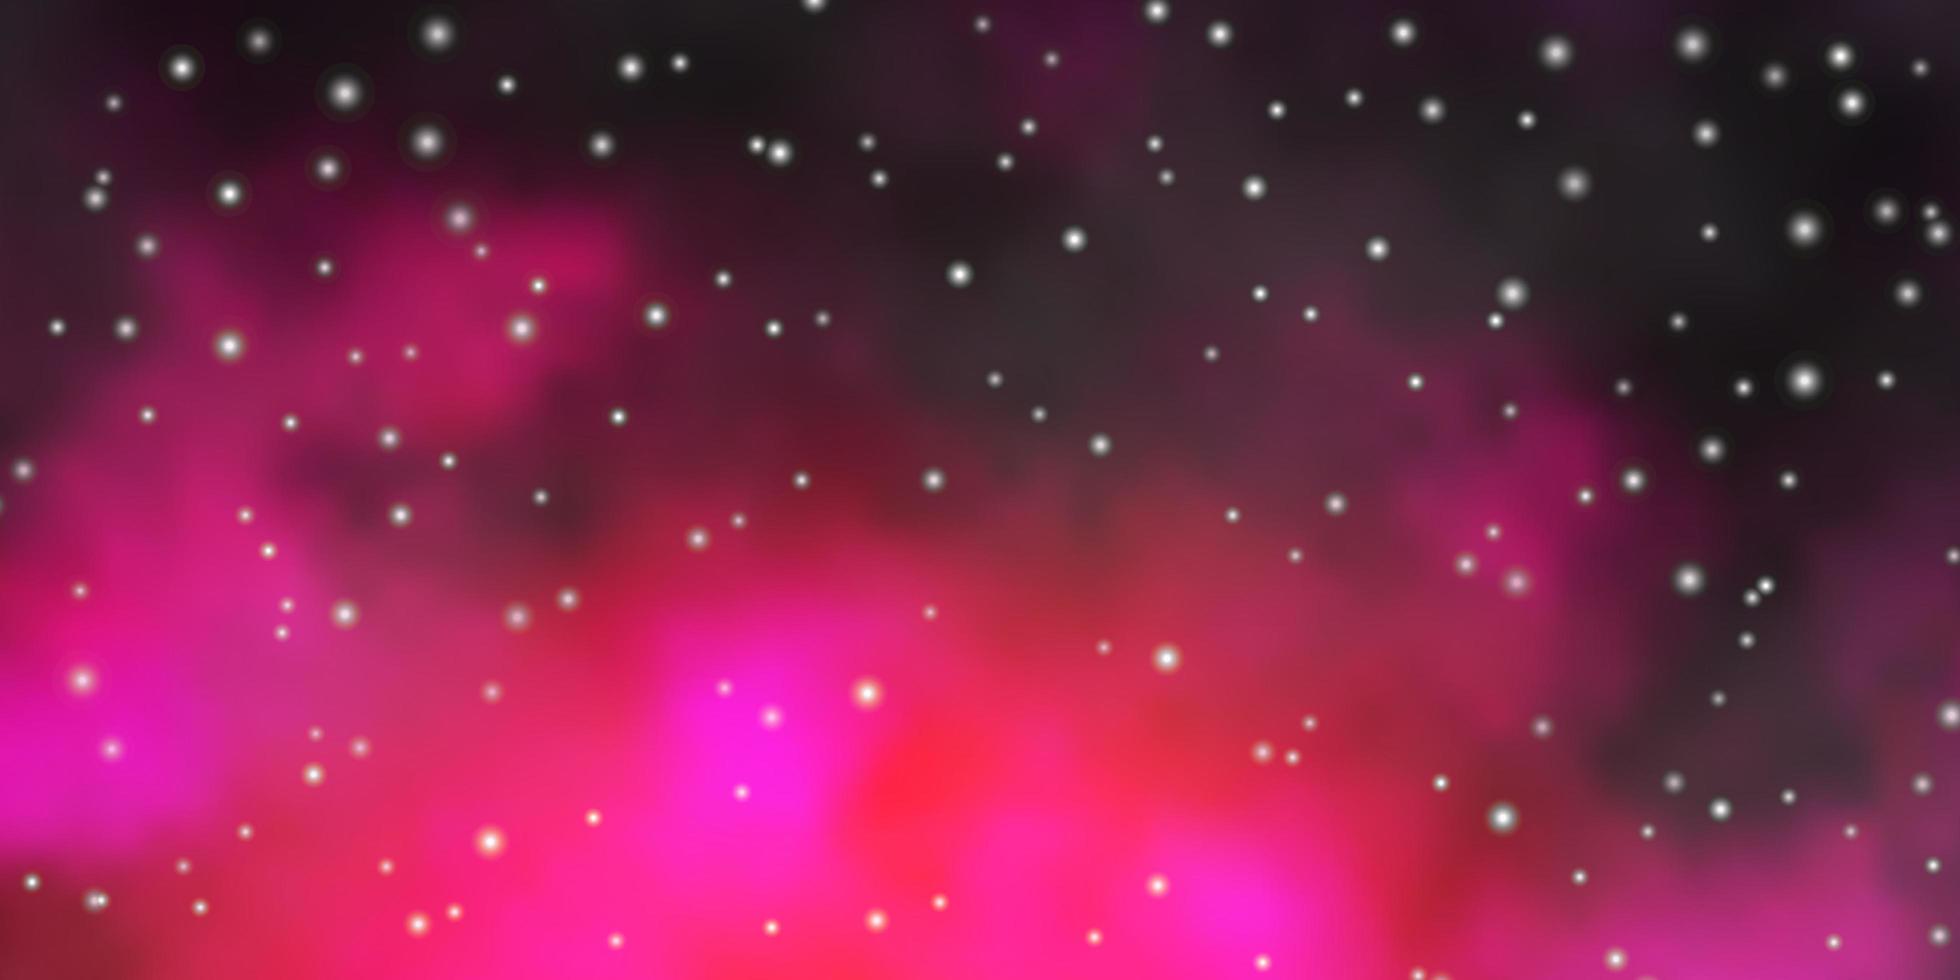 patrón de vector de color rosa oscuro con estrellas abstractas. colorida ilustración en estilo abstracto con estrellas de degradado. mejor diseño para su anuncio, cartel, banner.